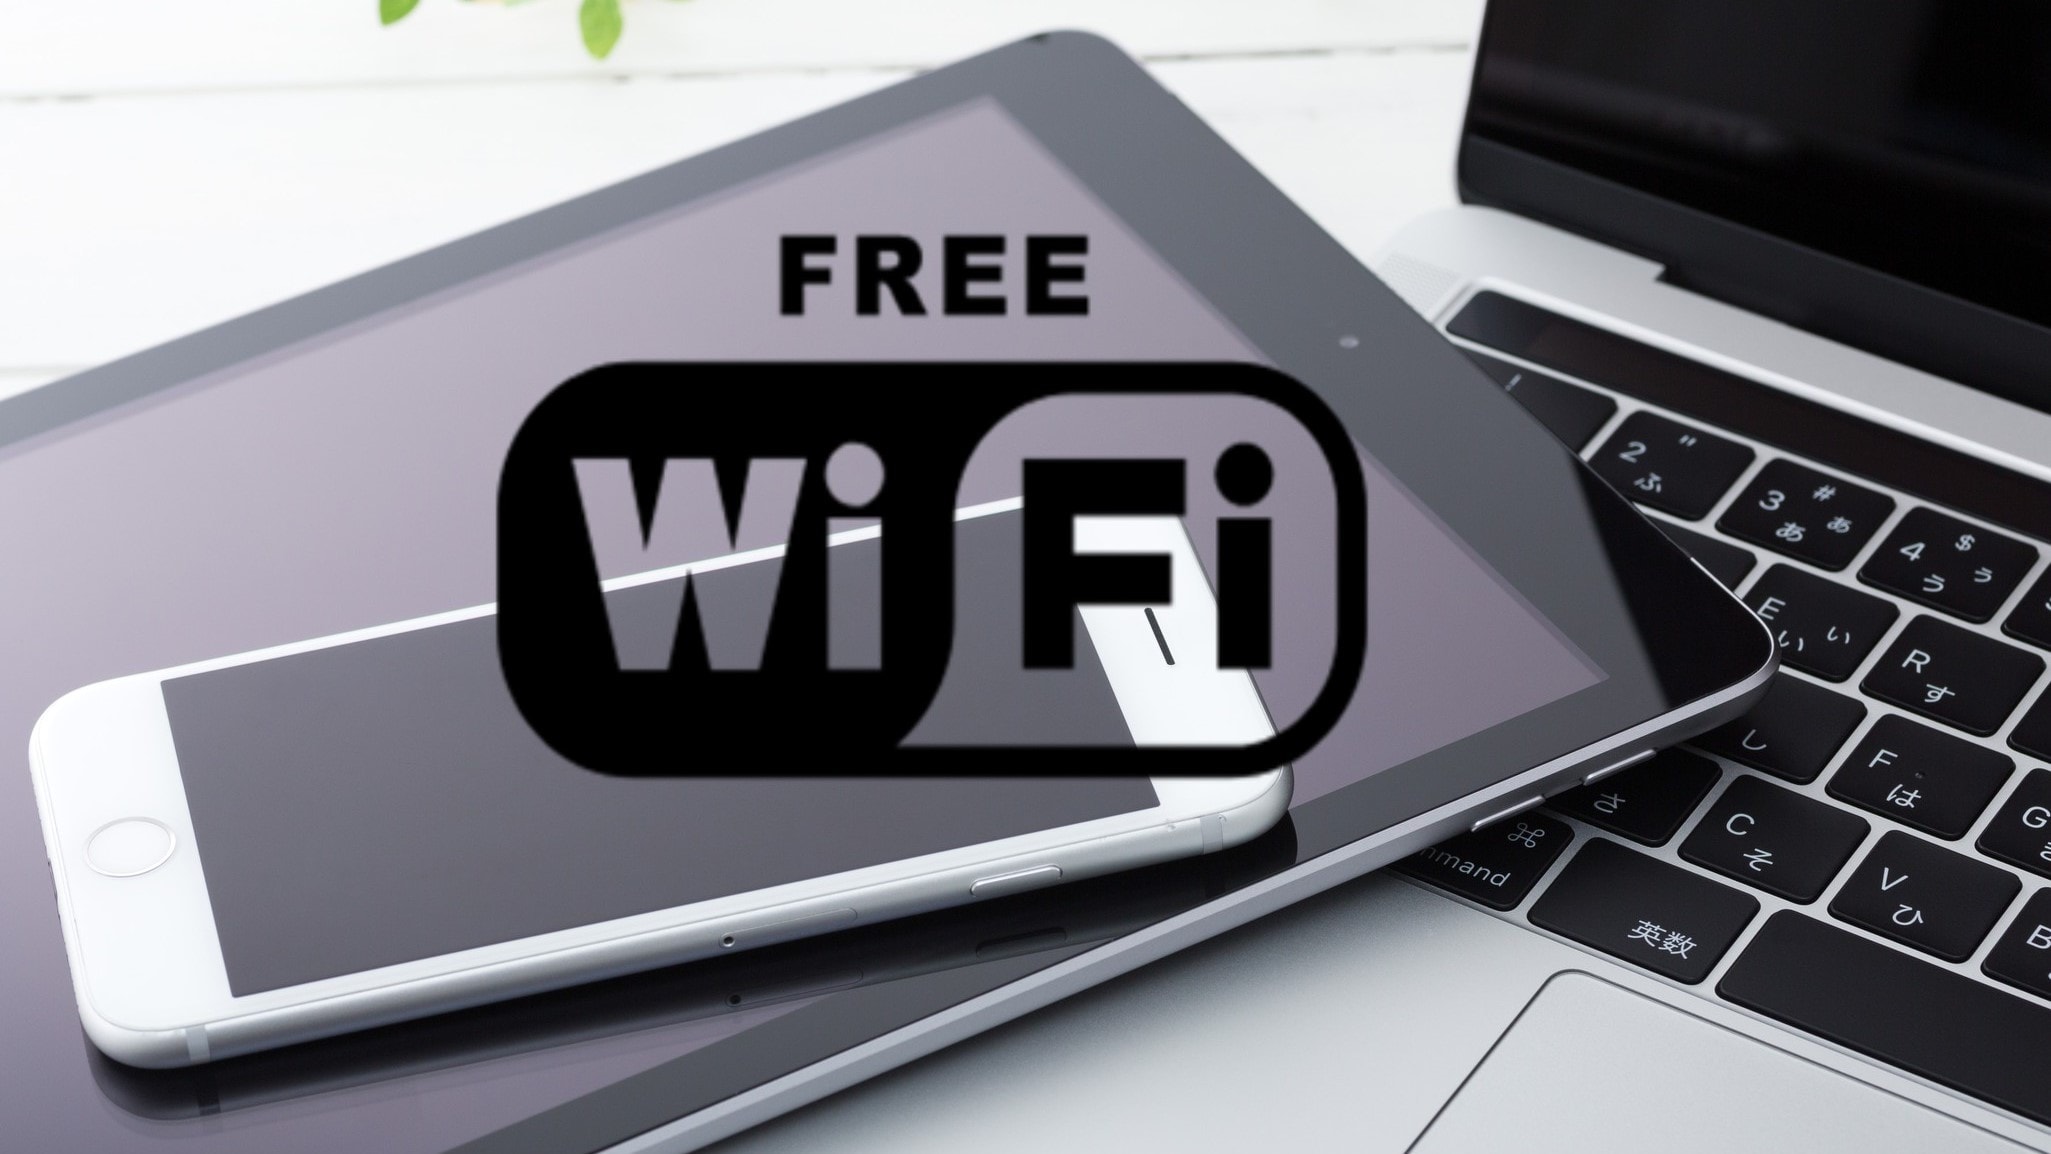 Wi-Fi（客房和整栋大楼免费连接）